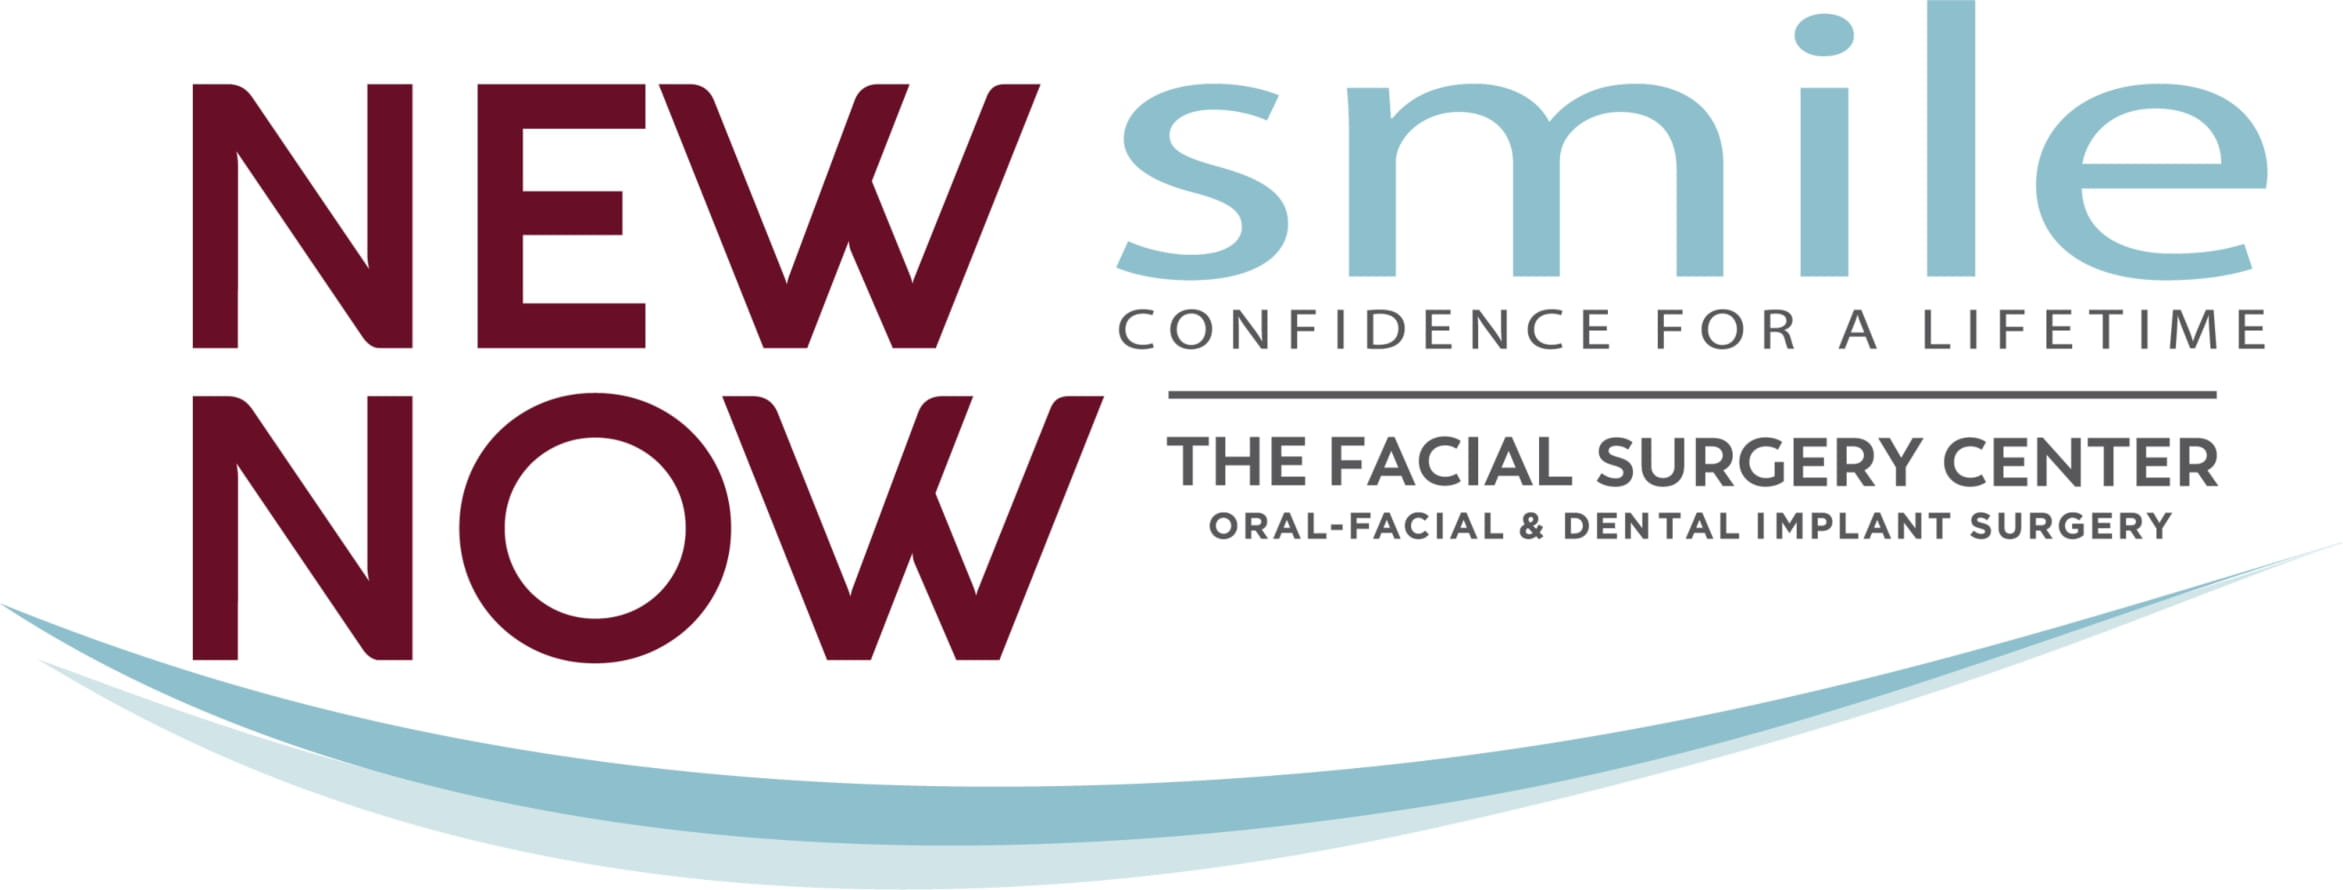 The Facial Surgery Center Logo